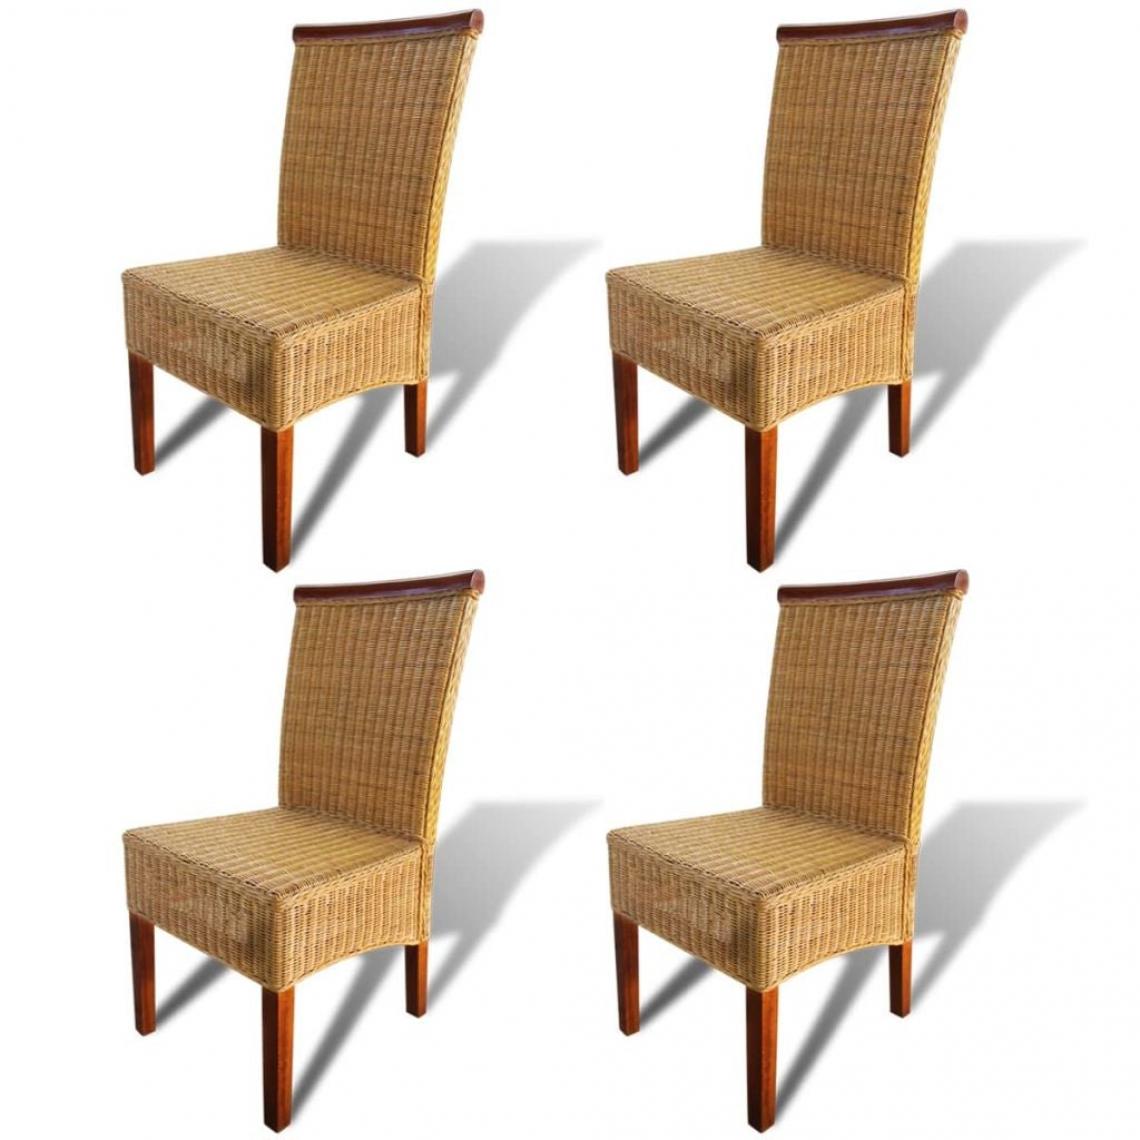 Decoshop26 - Lot de 4 chaises de salle à manger cuisine design classique rotin naturel marron CDS021698 - Chaises